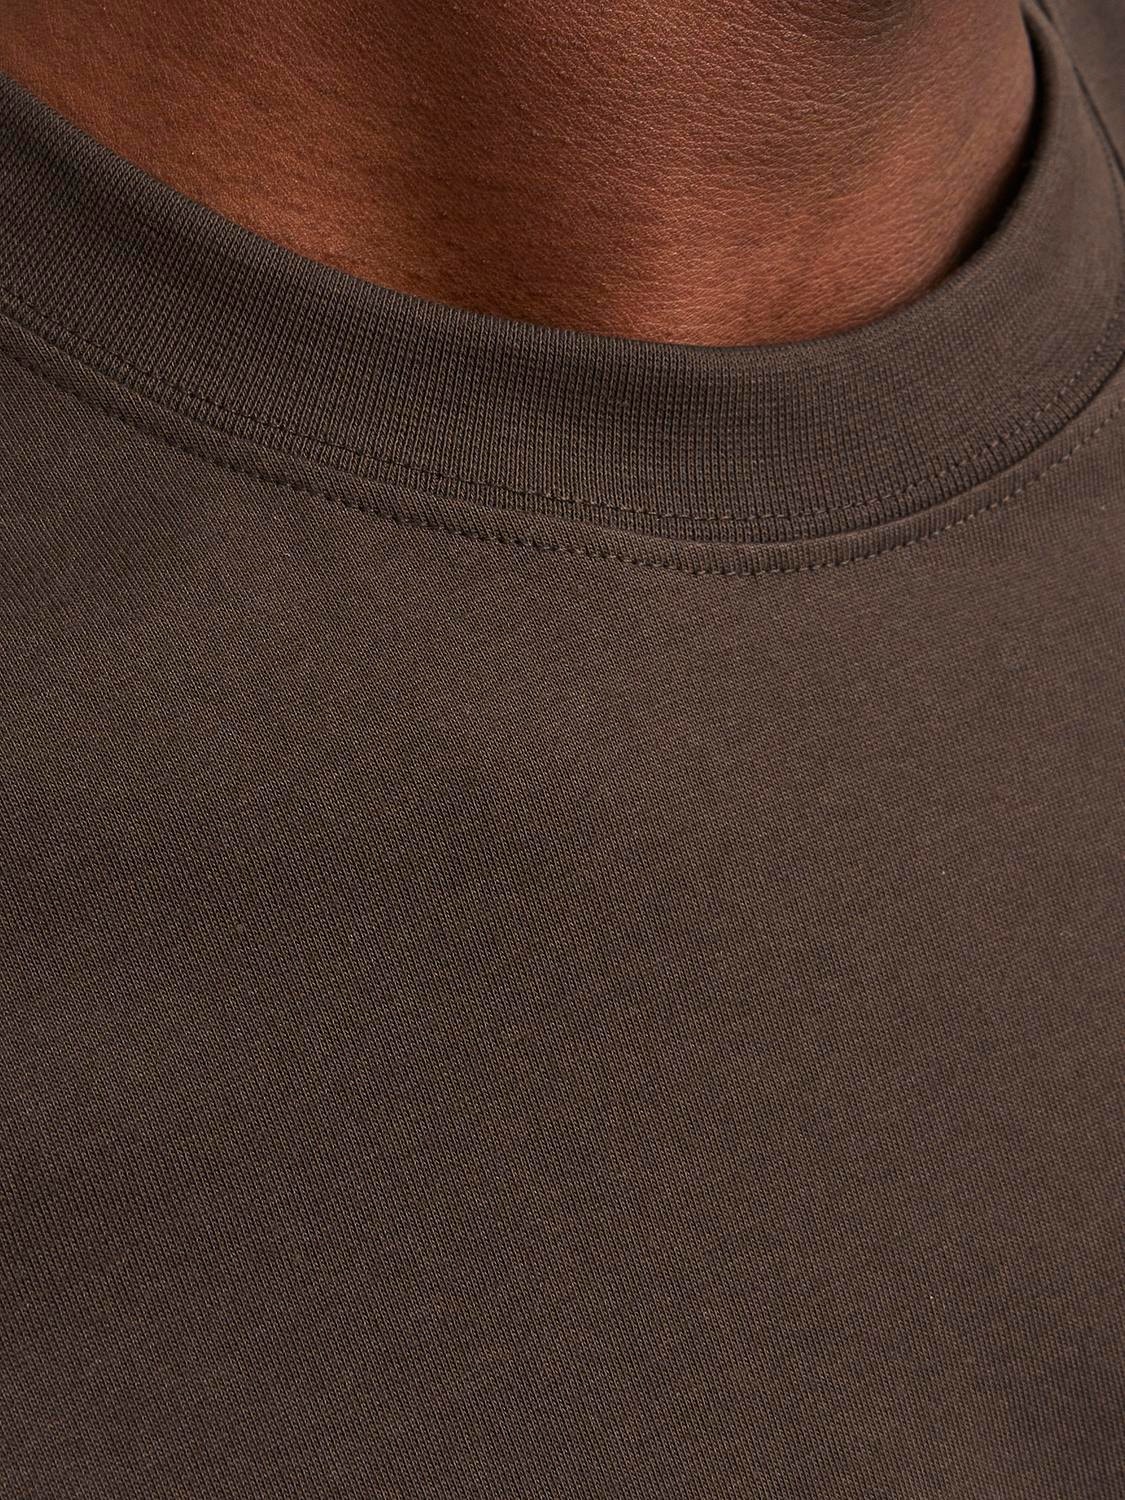 Jack & Jones Camiseta Estampado Cuello redondo -Chocolate Brown - 12246451